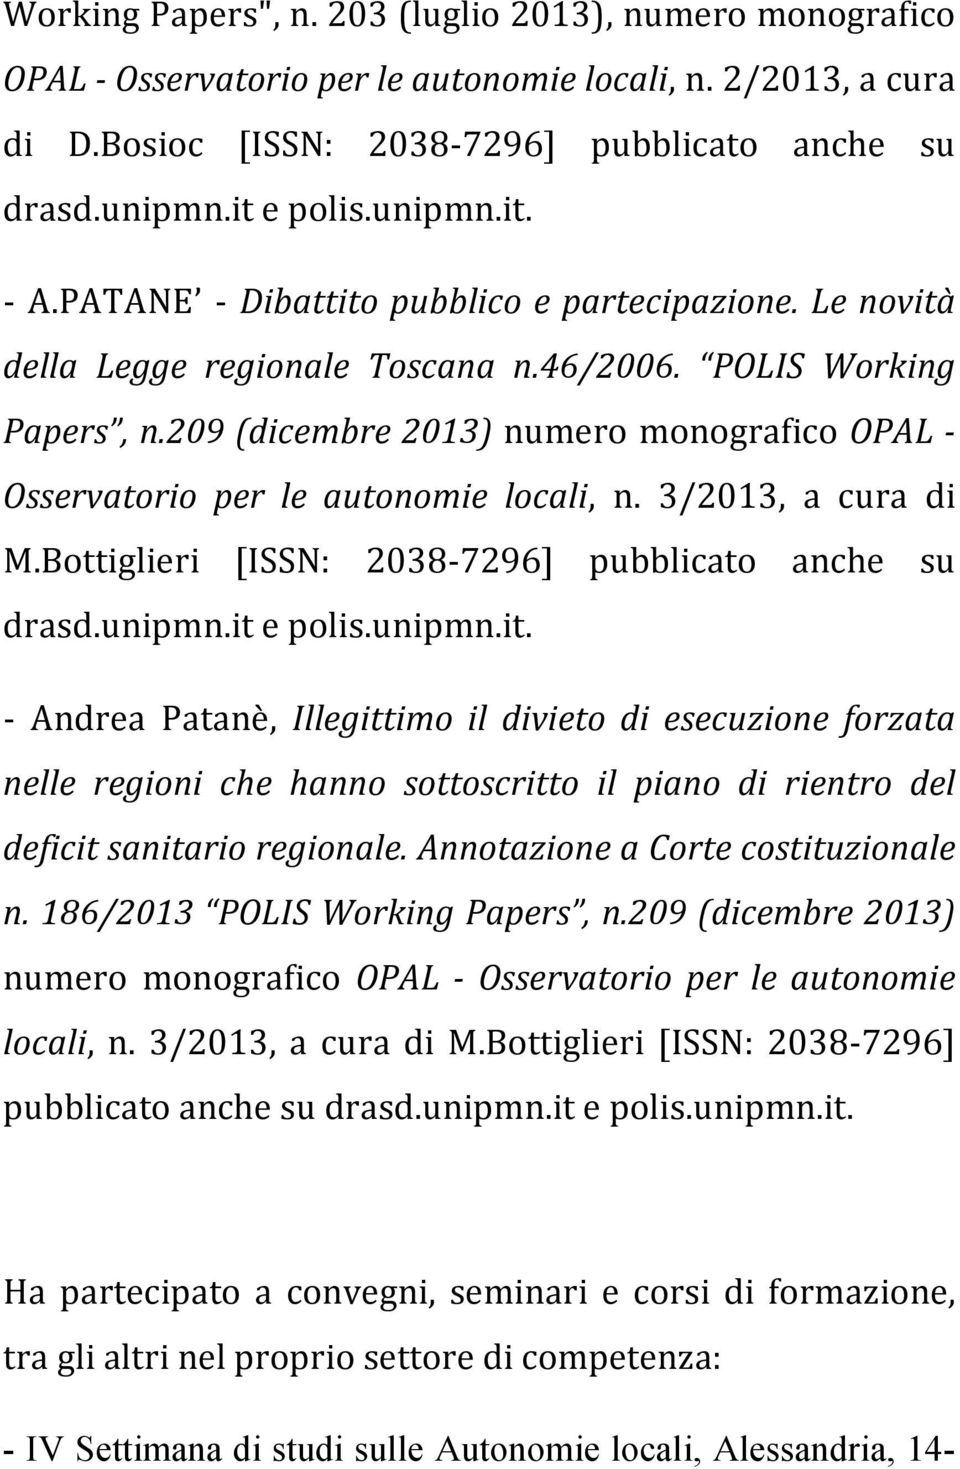 209 (dicembre 2013) numero monografico OPAL - Osservatorio per le autonomie locali, n. 3/2013, a cura di M.Bottiglieri [ISSN: 2038-7296] pubblicato anche su drasd.unipmn.it 